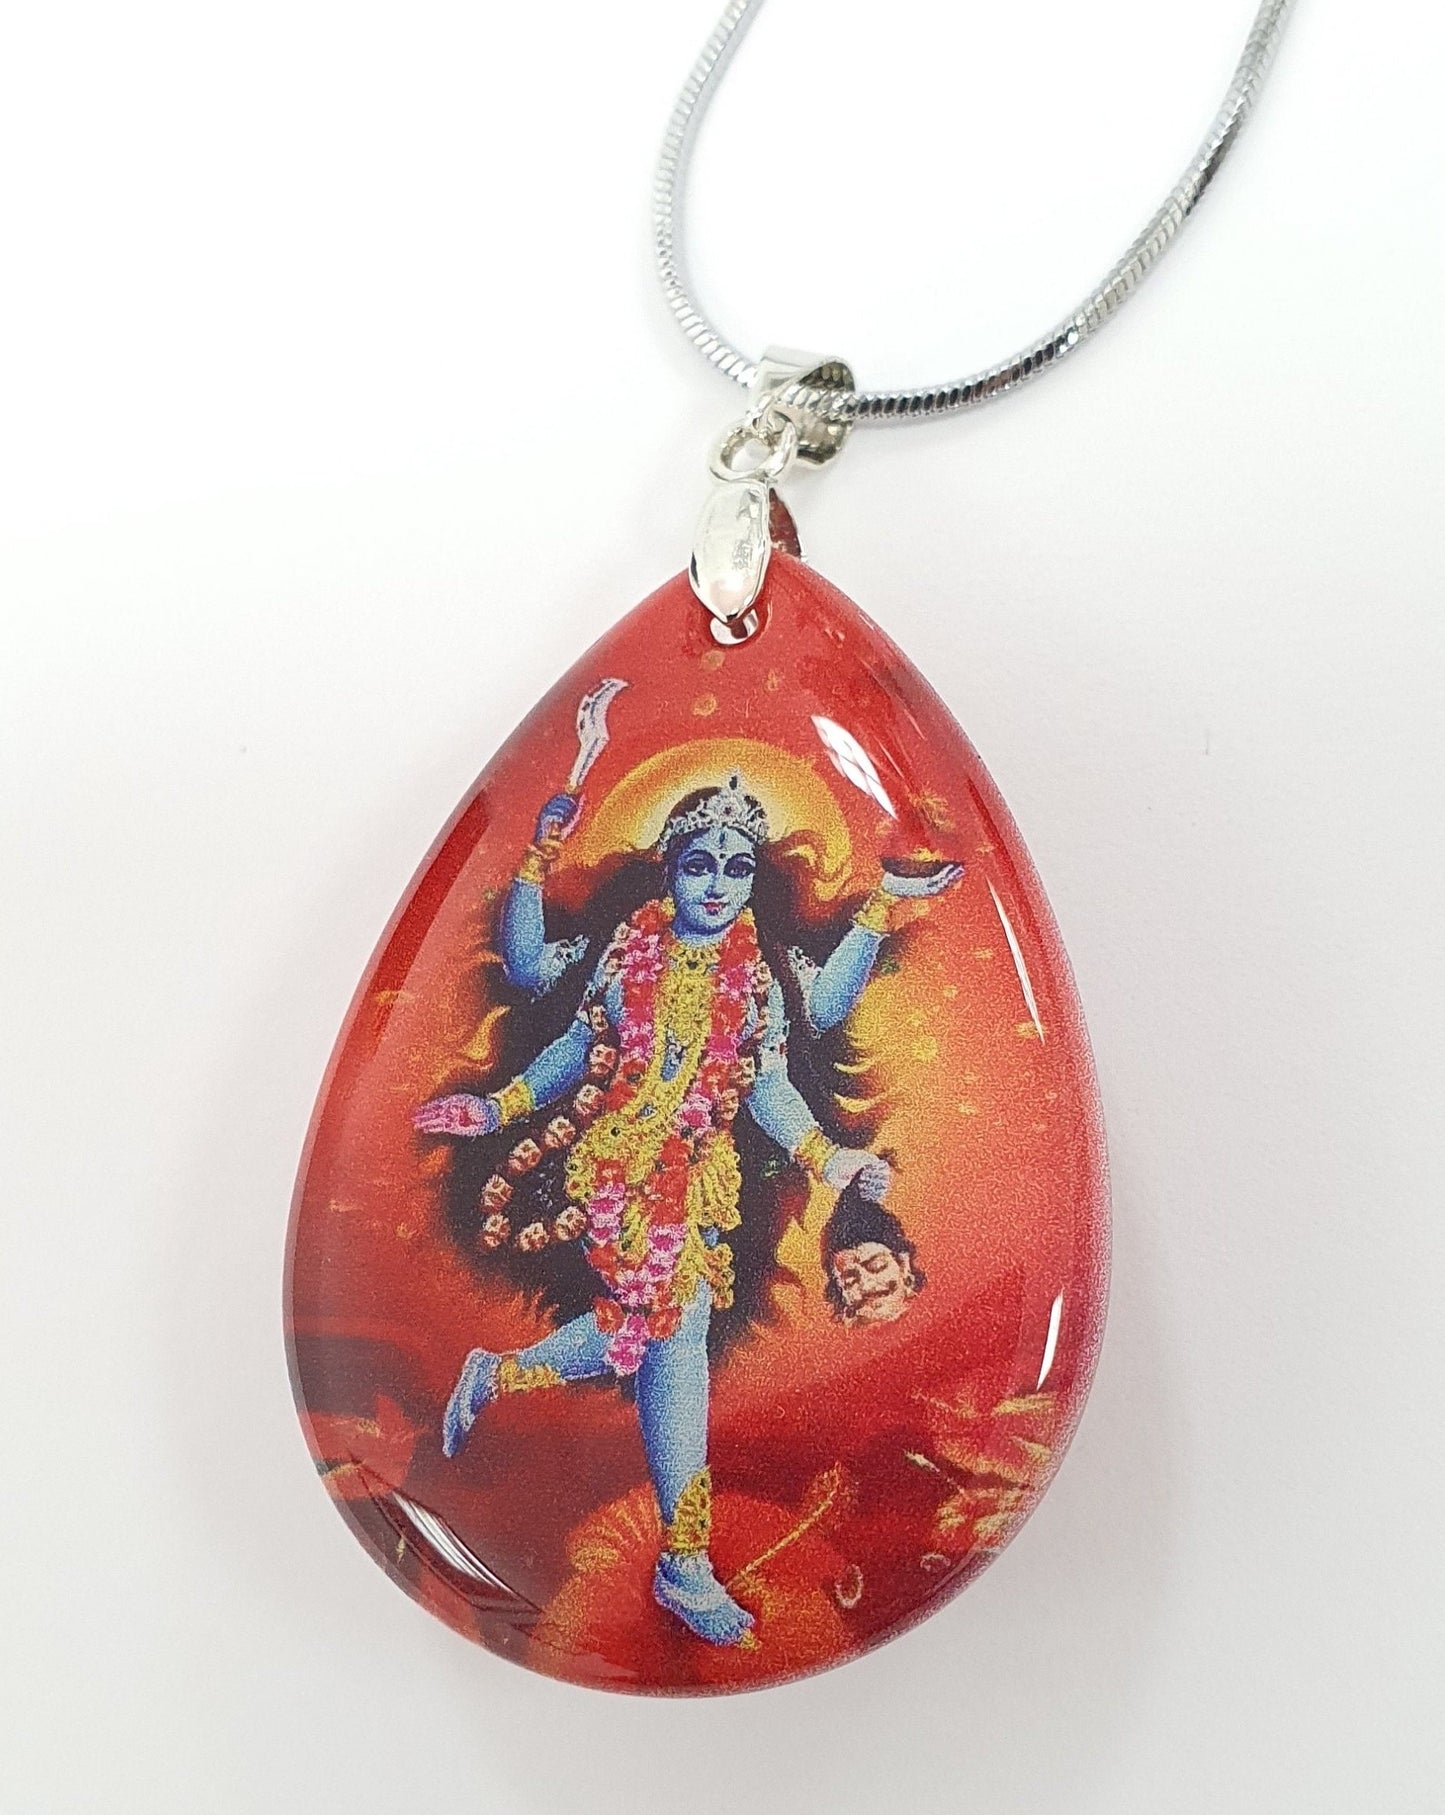 Goddess Kali pendant